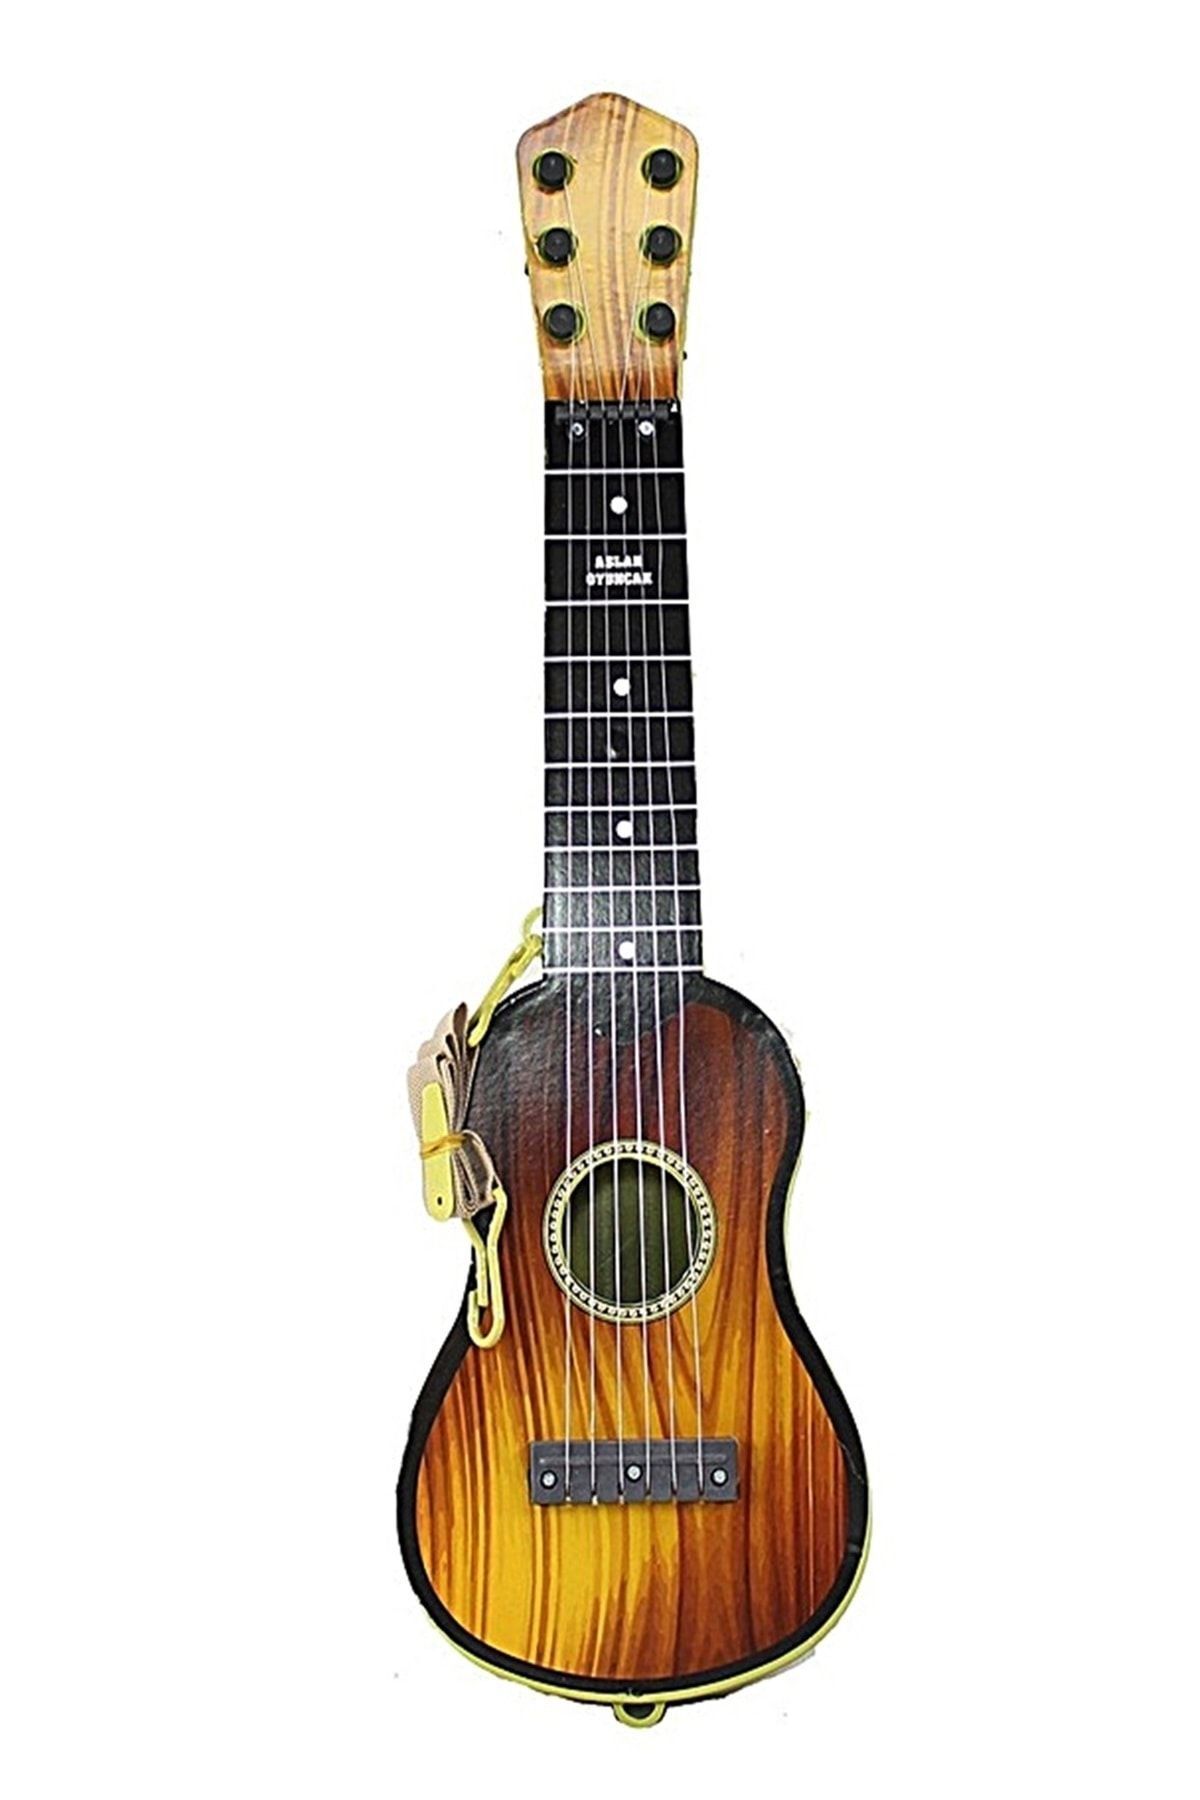 Satış Diyarı Oyuncak Çocuk Gitarı 6 Telli Ispanyol Gitar Tam Hediyelik Ürün Bir Çocuk Sevindir 50cm